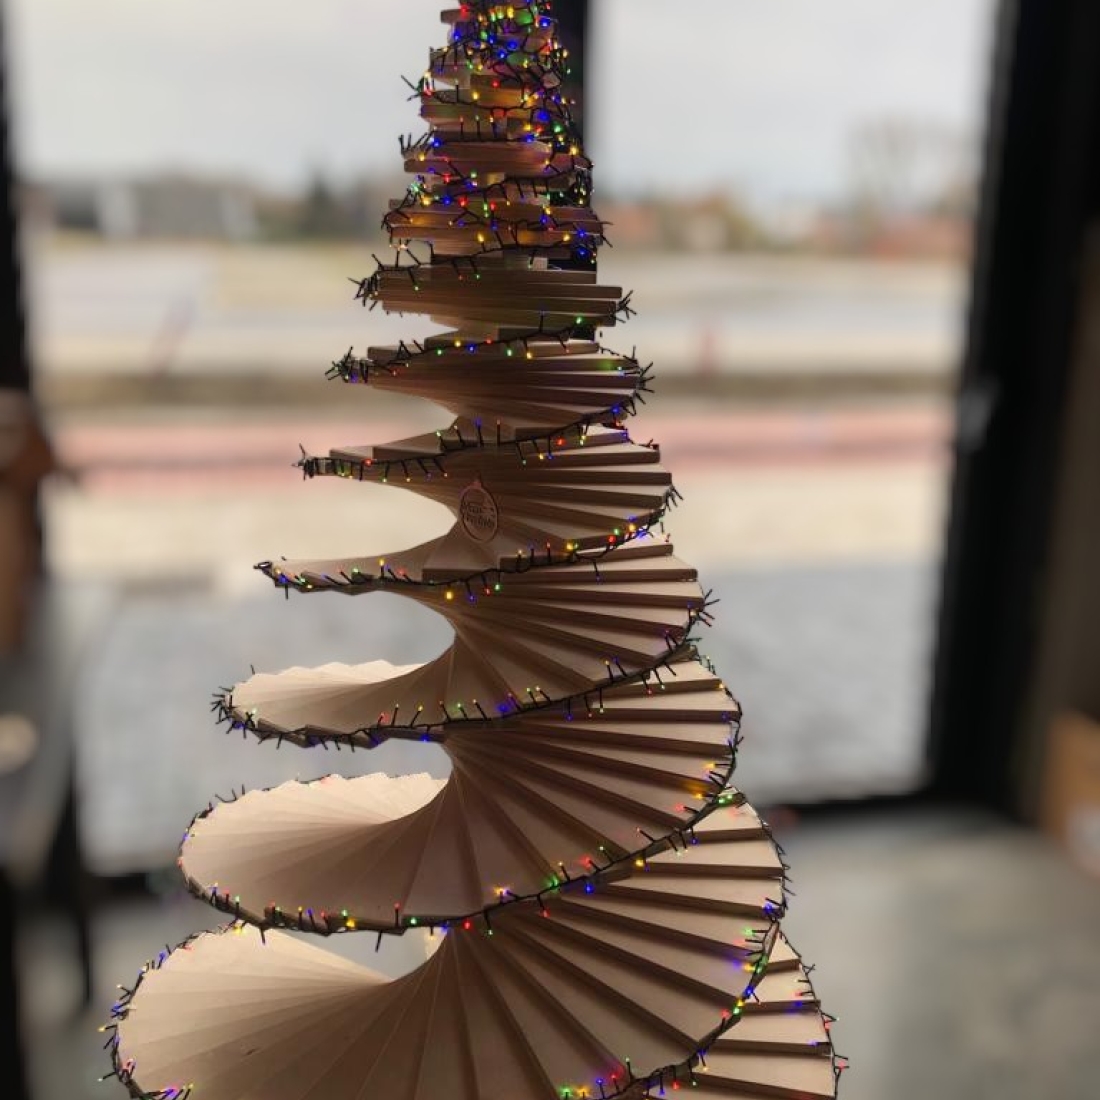 Spiral Christmas tree